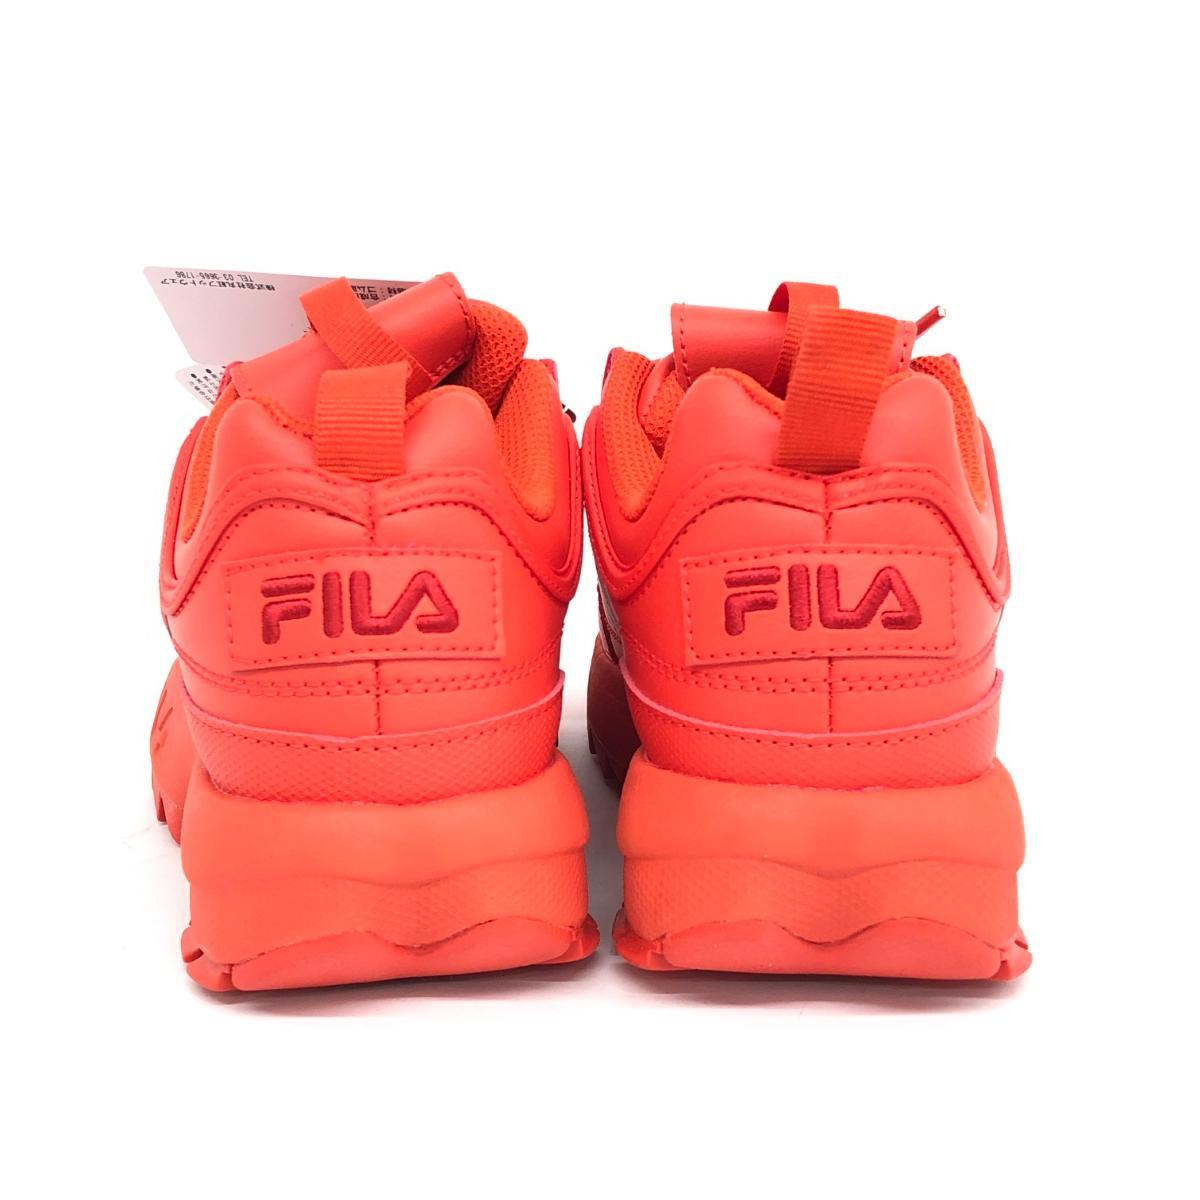 未使用品◆FILA フィラ ディスラプター2 スニーカー 22.0cm◆ レッド レディース 靴 シューズ sneakers_画像4